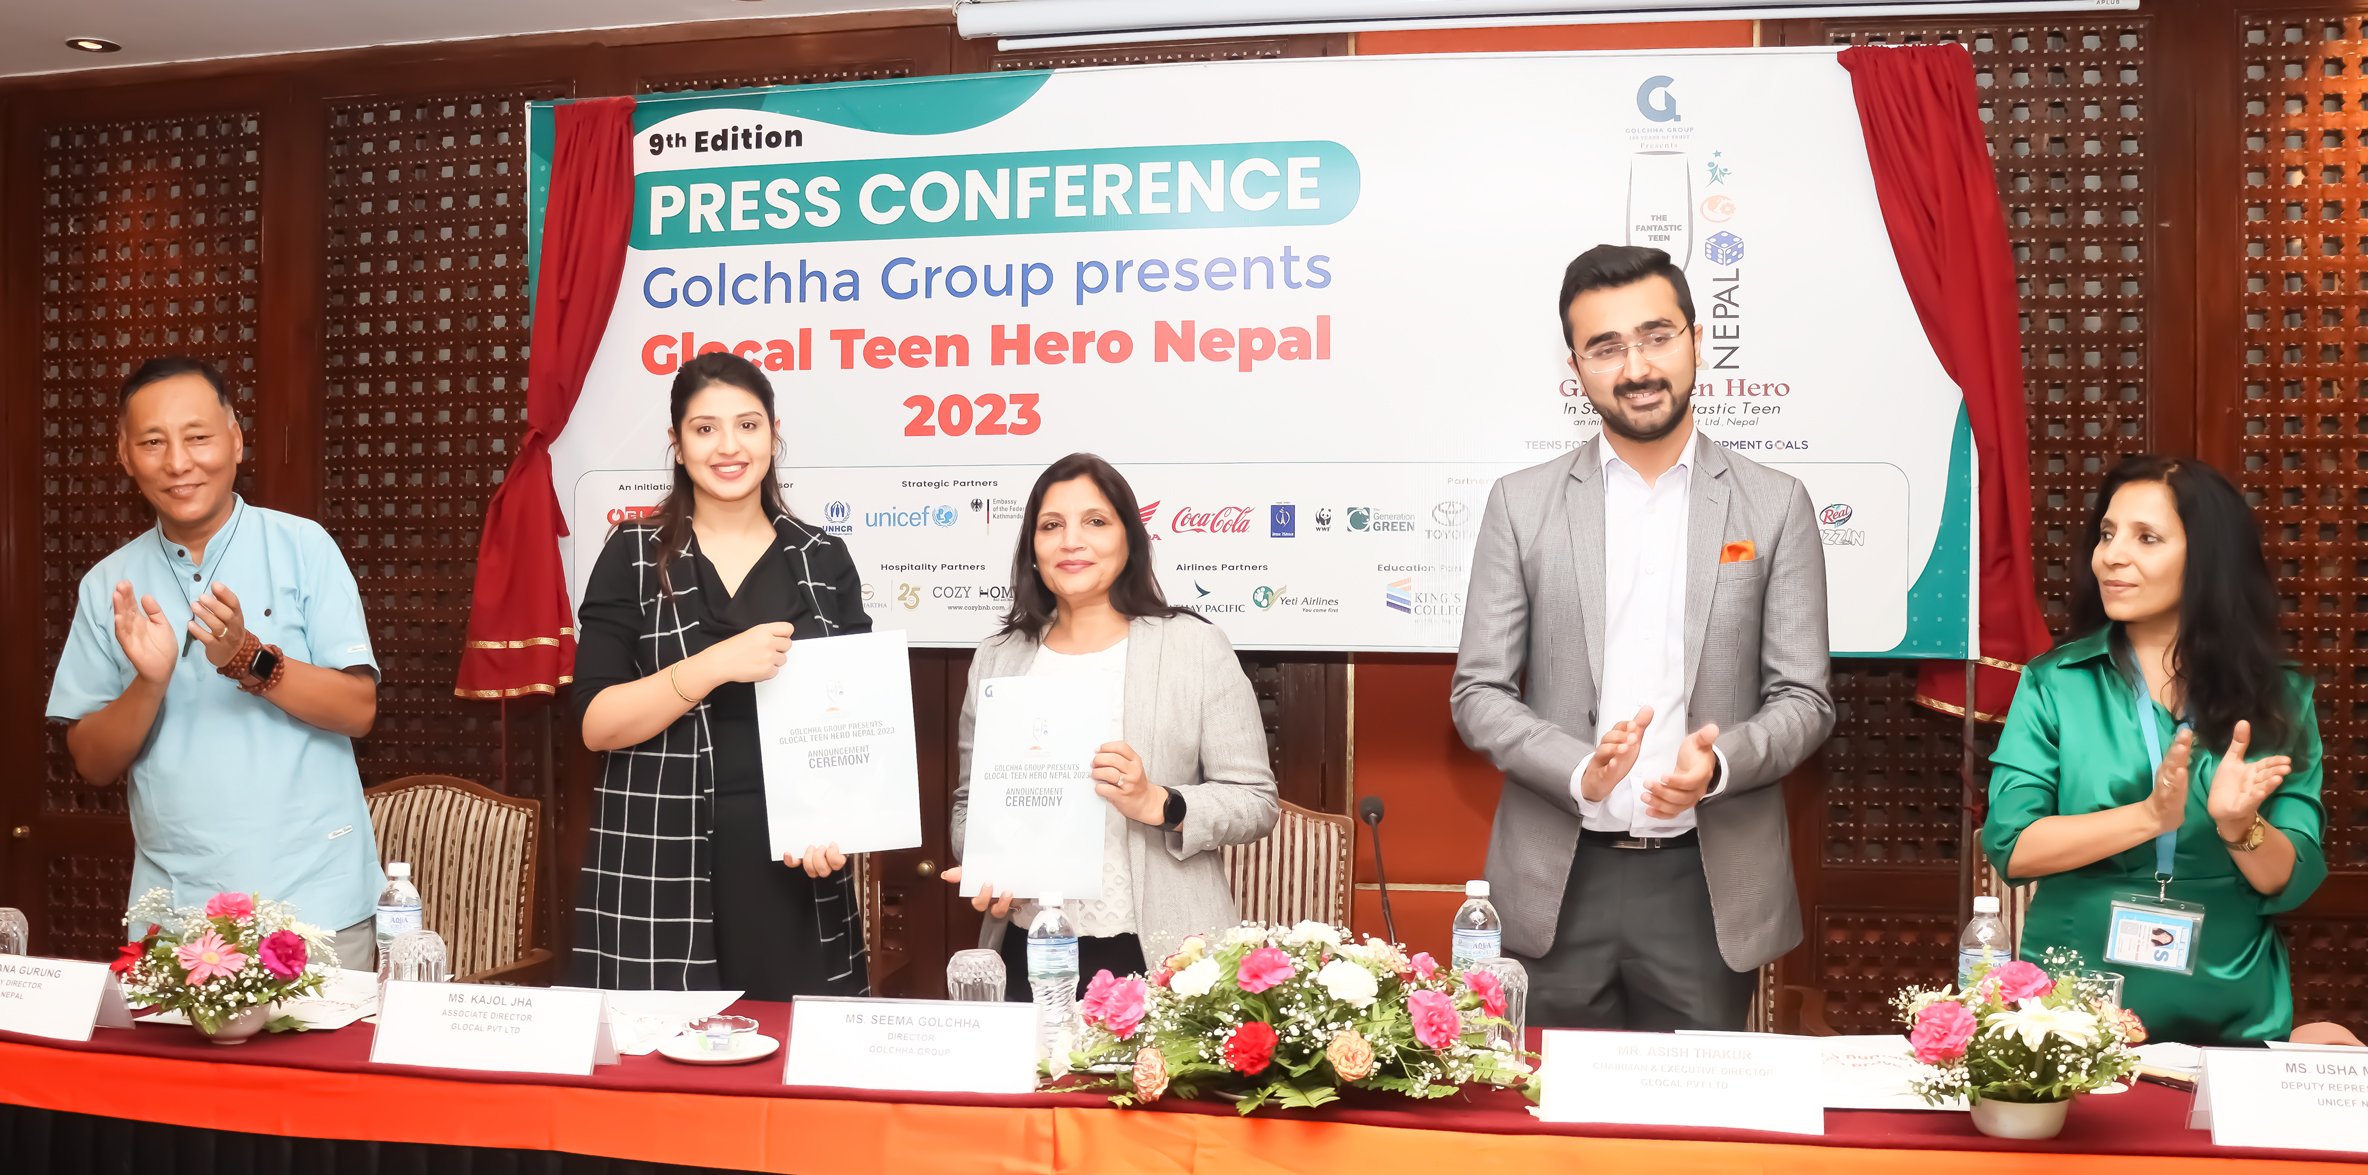 गोल्छा ग्रुपद्वारा प्रस्तुत ग्लोकल टिन हिरो नेपाल २०२३ को  लागि आवेदन खुल्ला